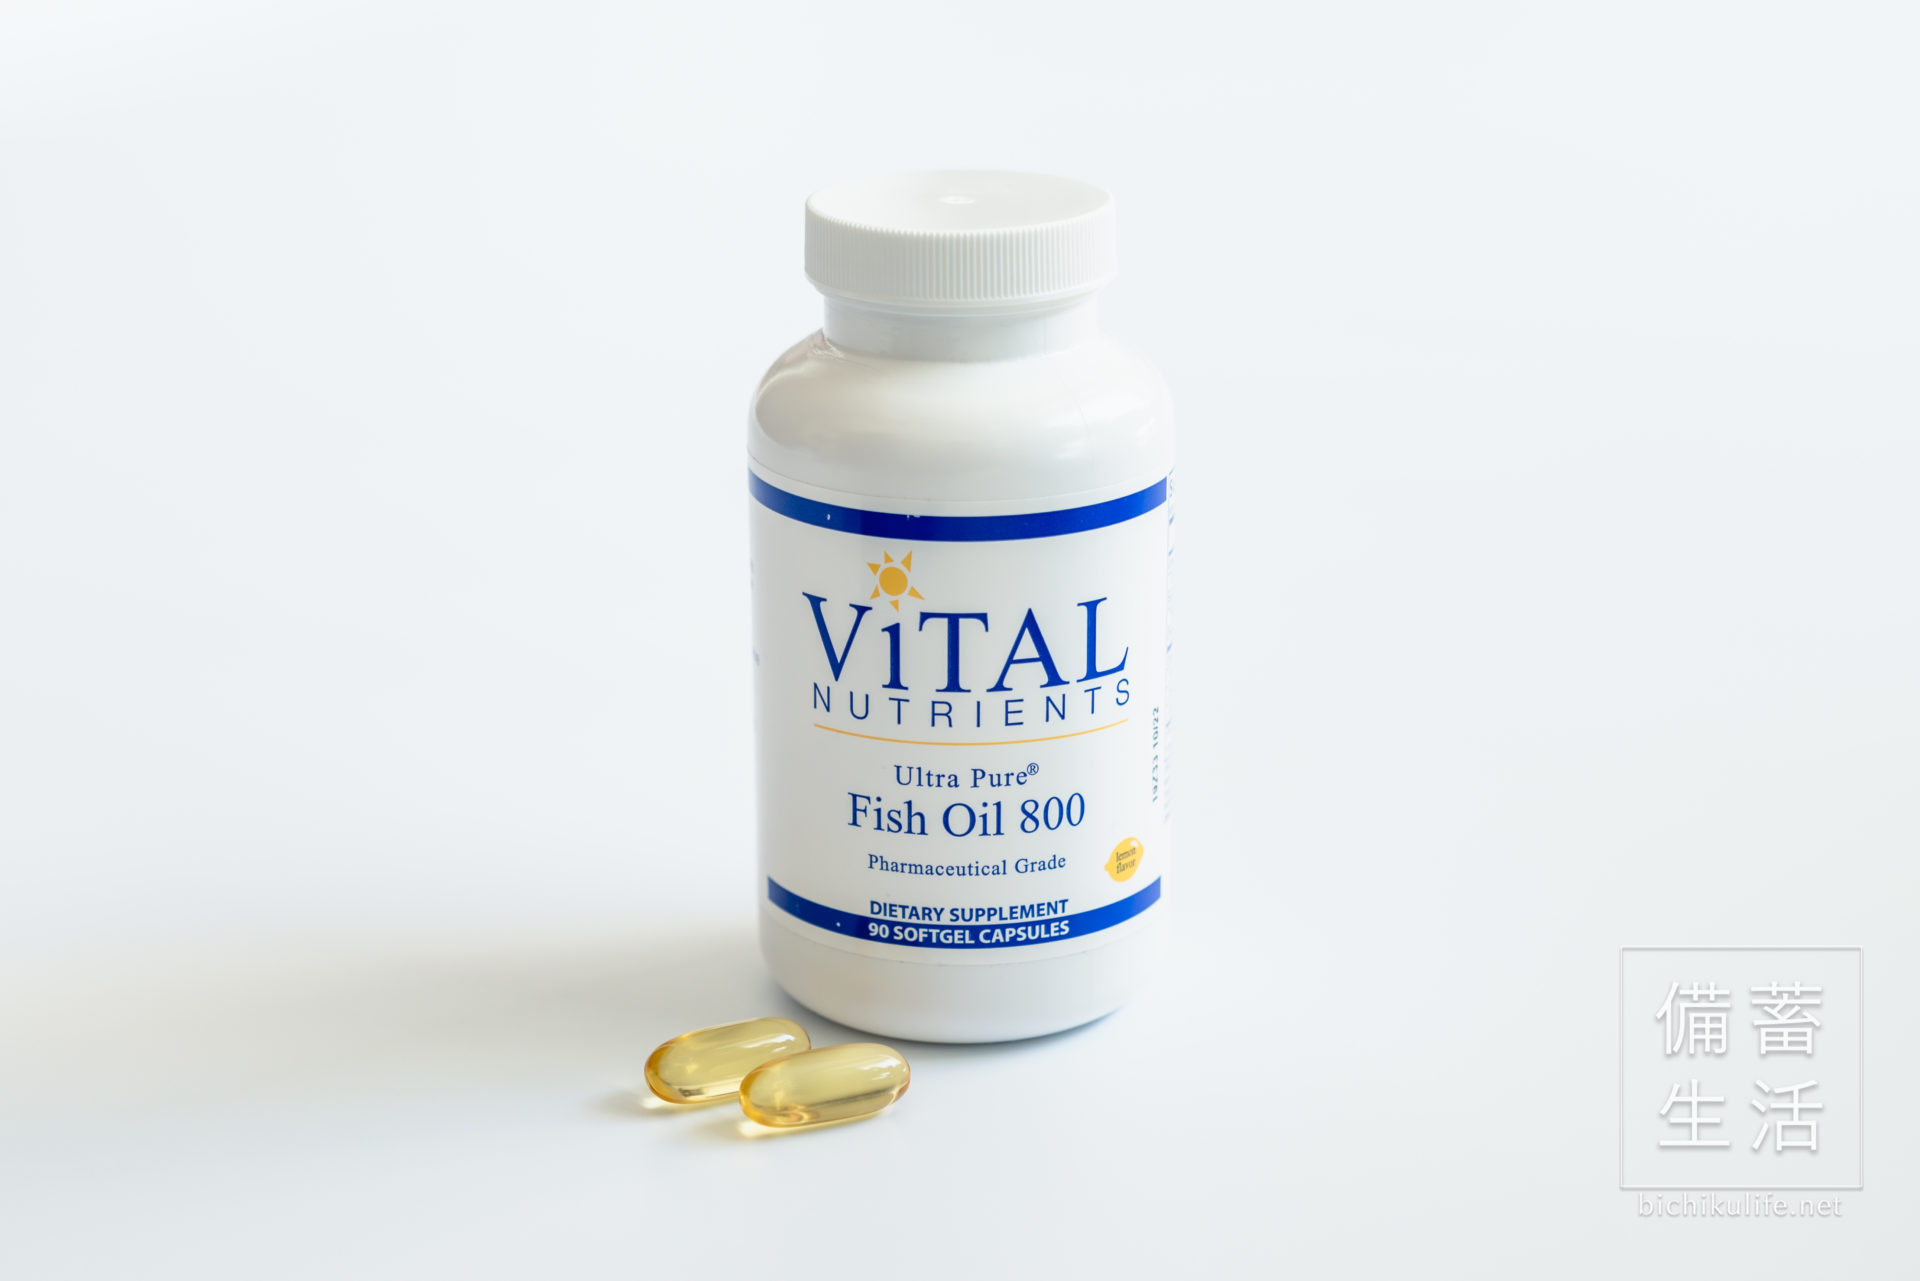 ヴァイタル ニュートリエンツ フィッシュオイル800 Vital Nutrients Fish Oil 800